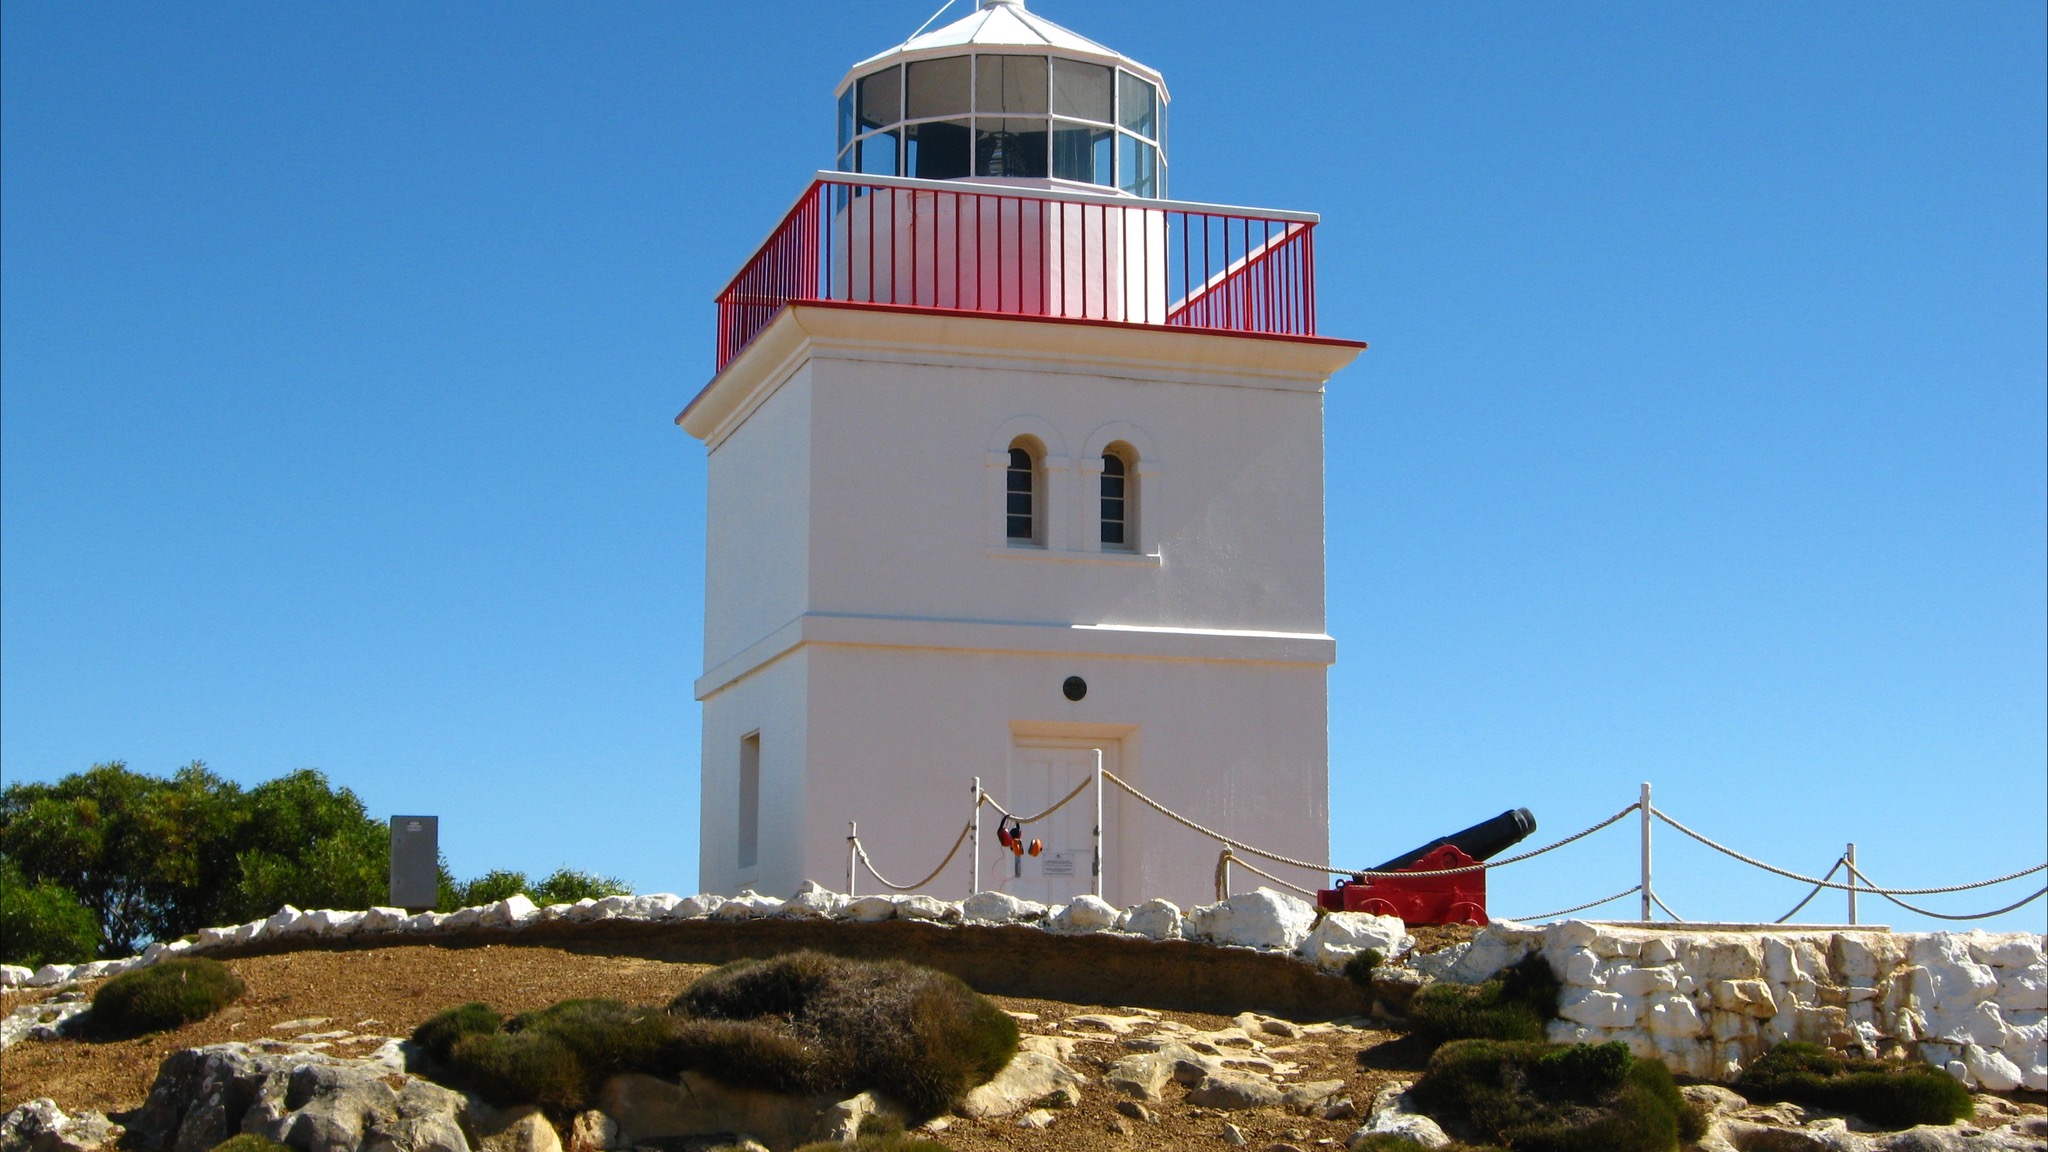 Cape Borda Lighthouse Keepers Heritage Accommodation - Accommodation NSW